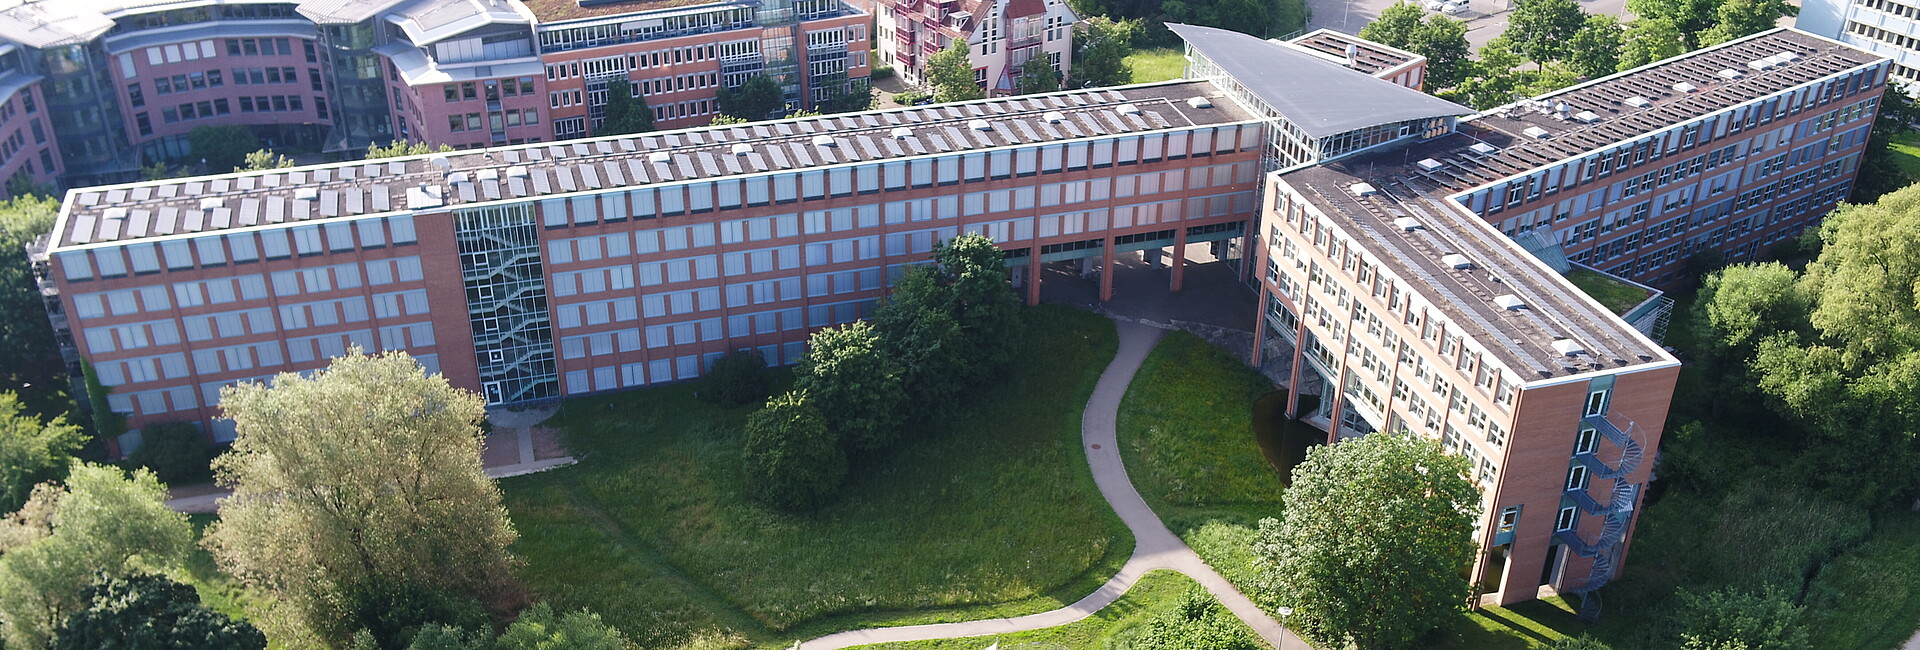 Das Gebäude des Regierungspräsidiums Tübingen in der Konrad-Adenauer-Str. 20 in Tübingen von einer Drohne aus aufgenommen.